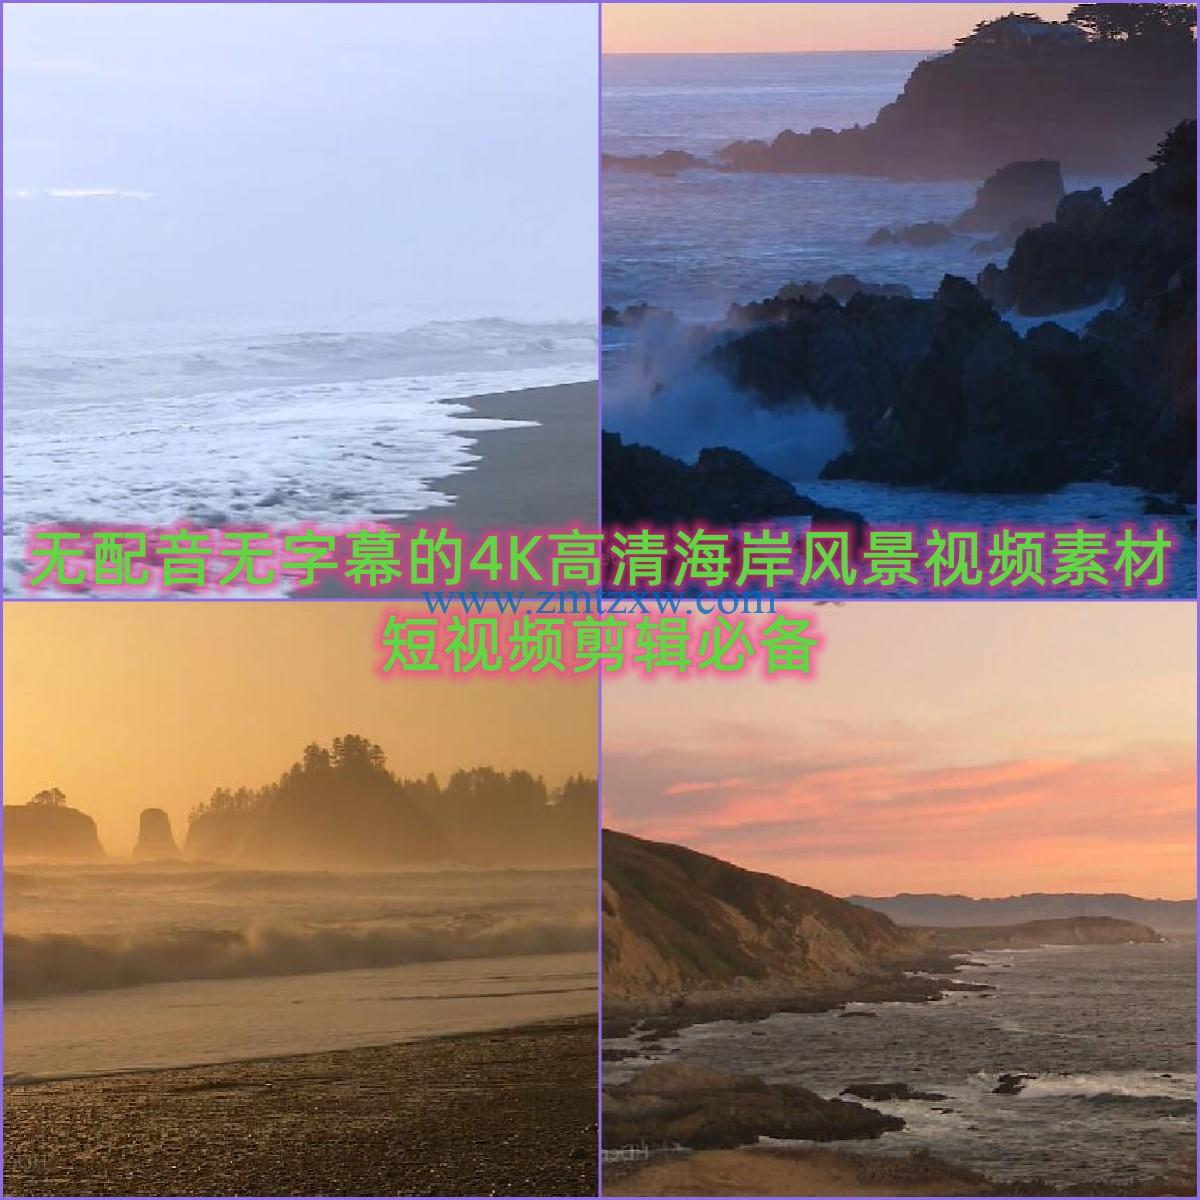 无配音无字幕的4K高清海岸风景视频素材，短视频剪辑必备